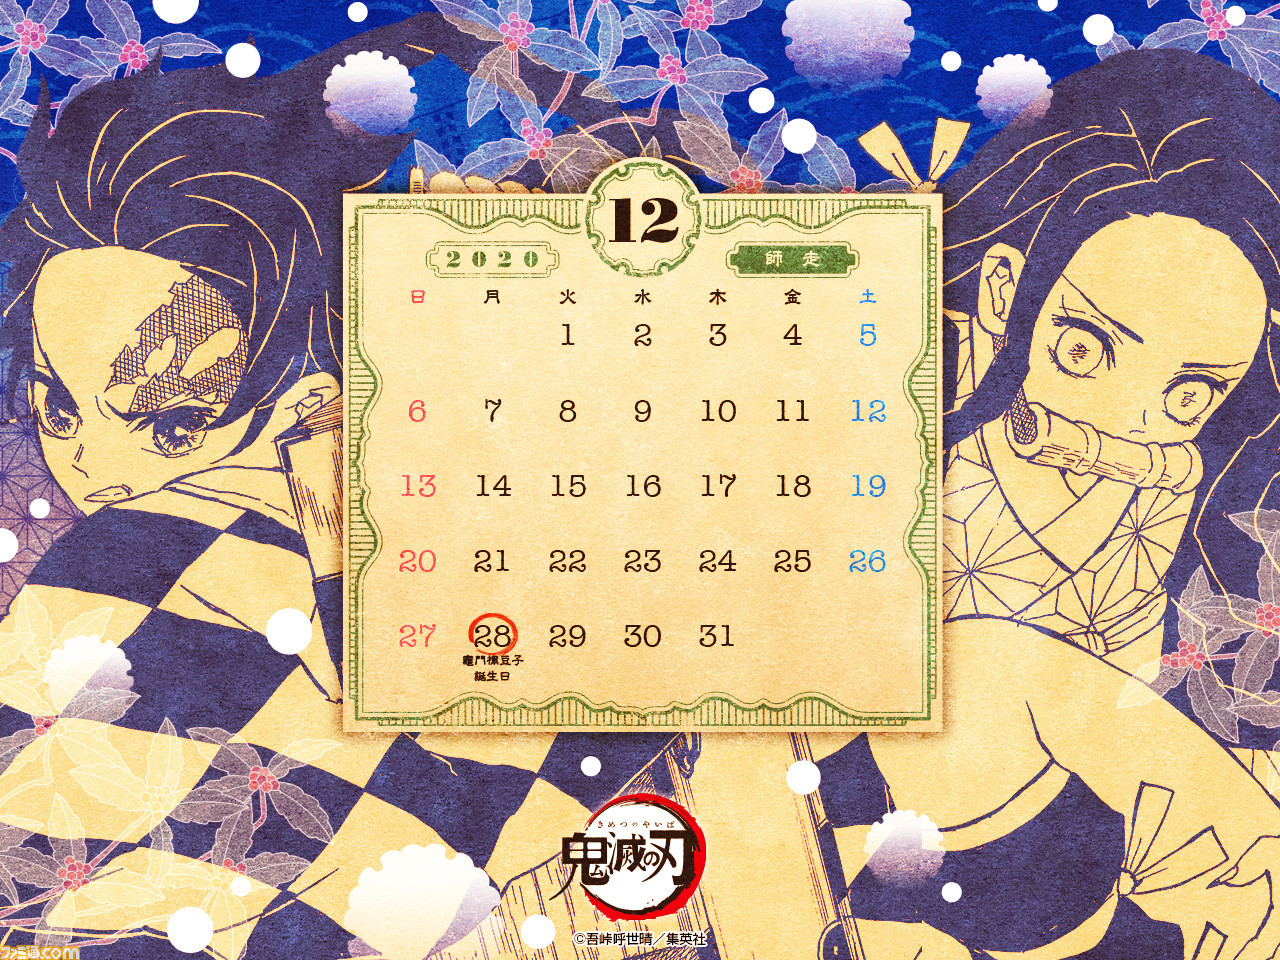 鬼滅の刃 12月分のカレンダー壁紙が公開 降りしきる雪の中 炭治郎と禰豆子は何を思うのか ファミ通 Com